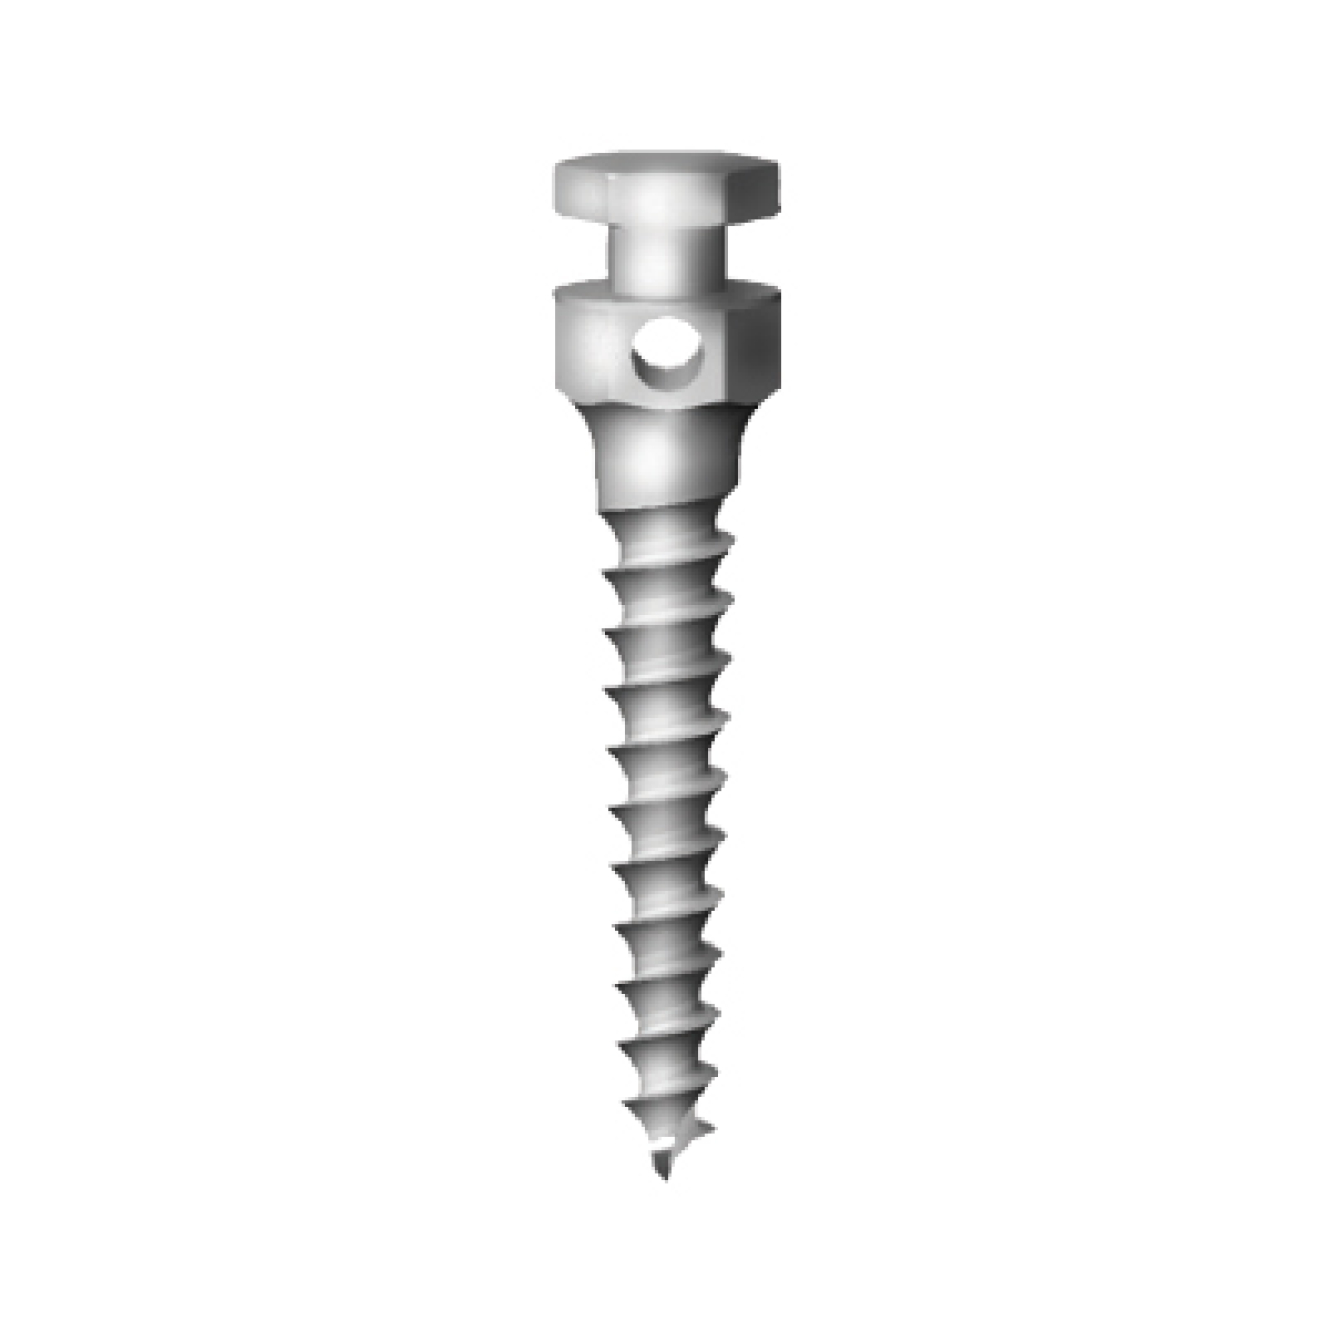 OS-L-16-008 Стоматологический ортодонтический винт для эластичной тяги и проволоки, диаметр 1.6 мм, длина 8 мм, Mr.Curette Tech, Южная Корея